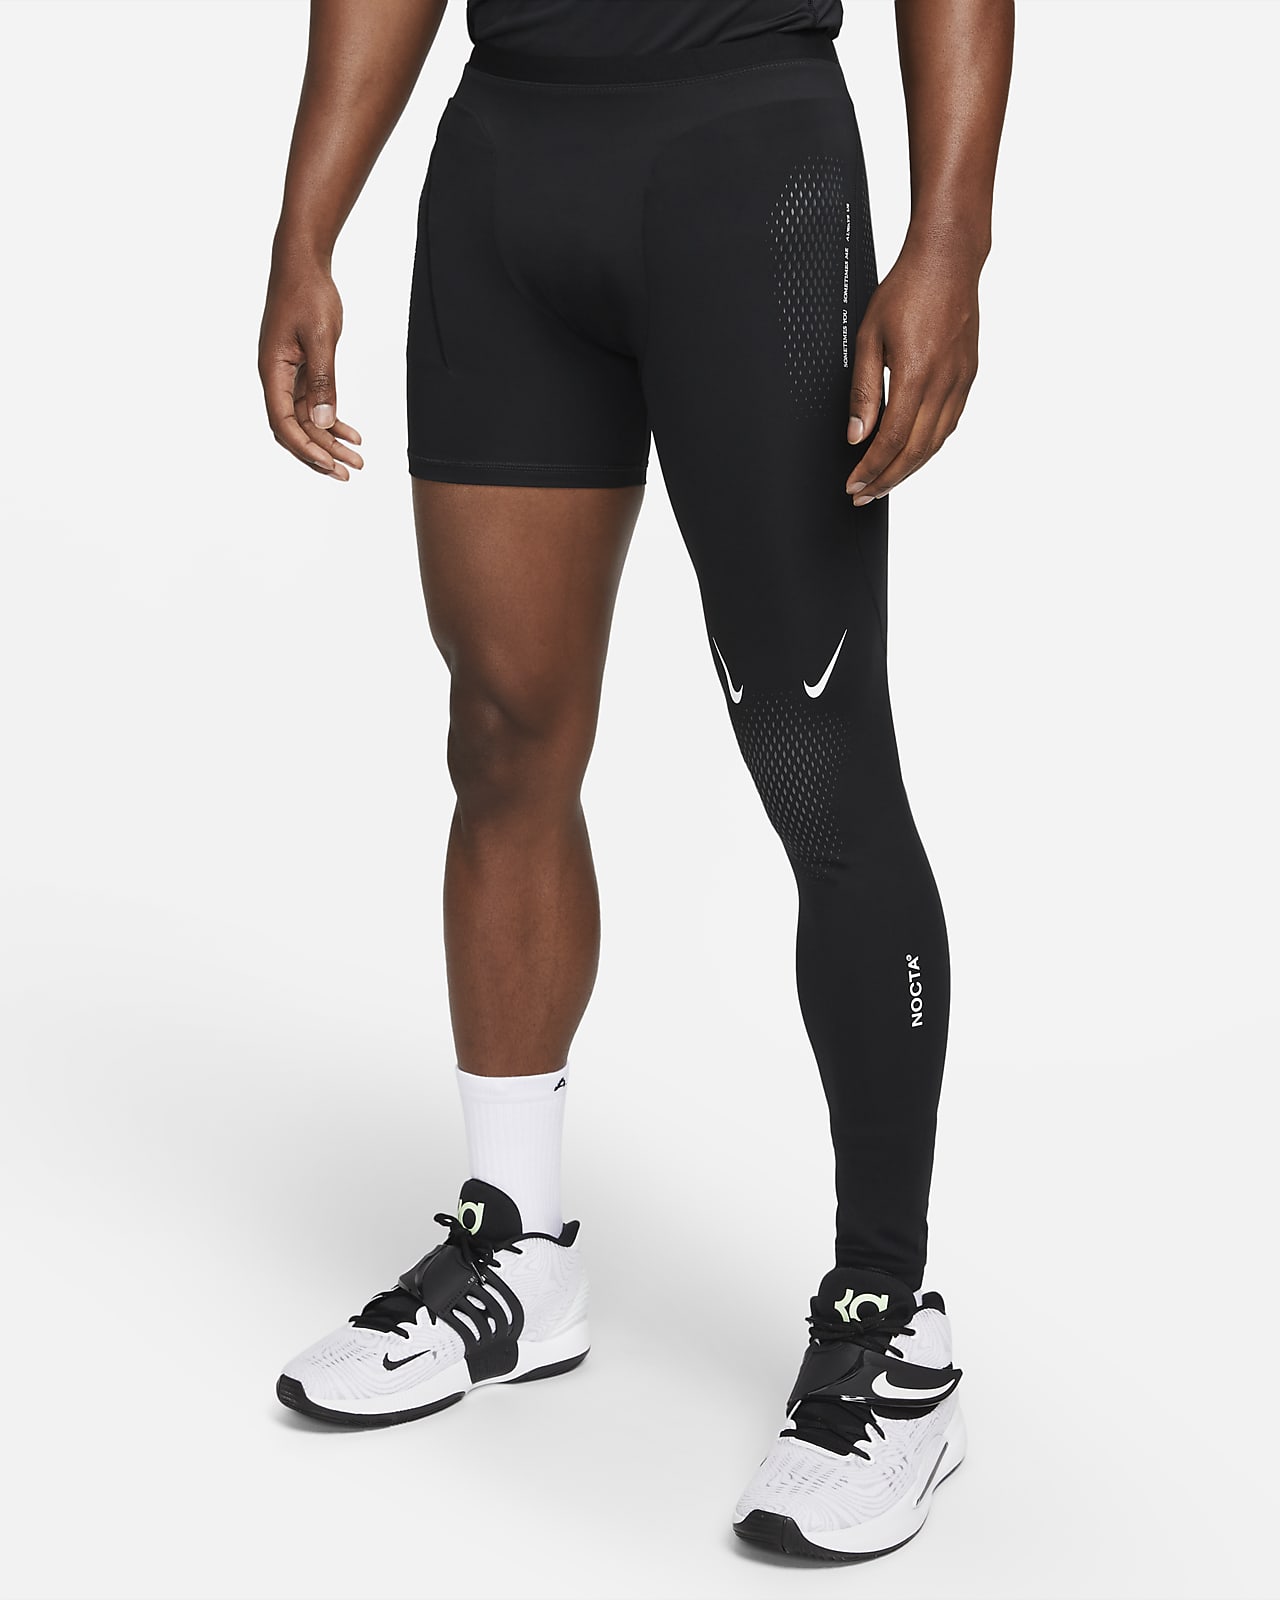 NOCTA Single-Leg Basketball Tights (Left). Nike